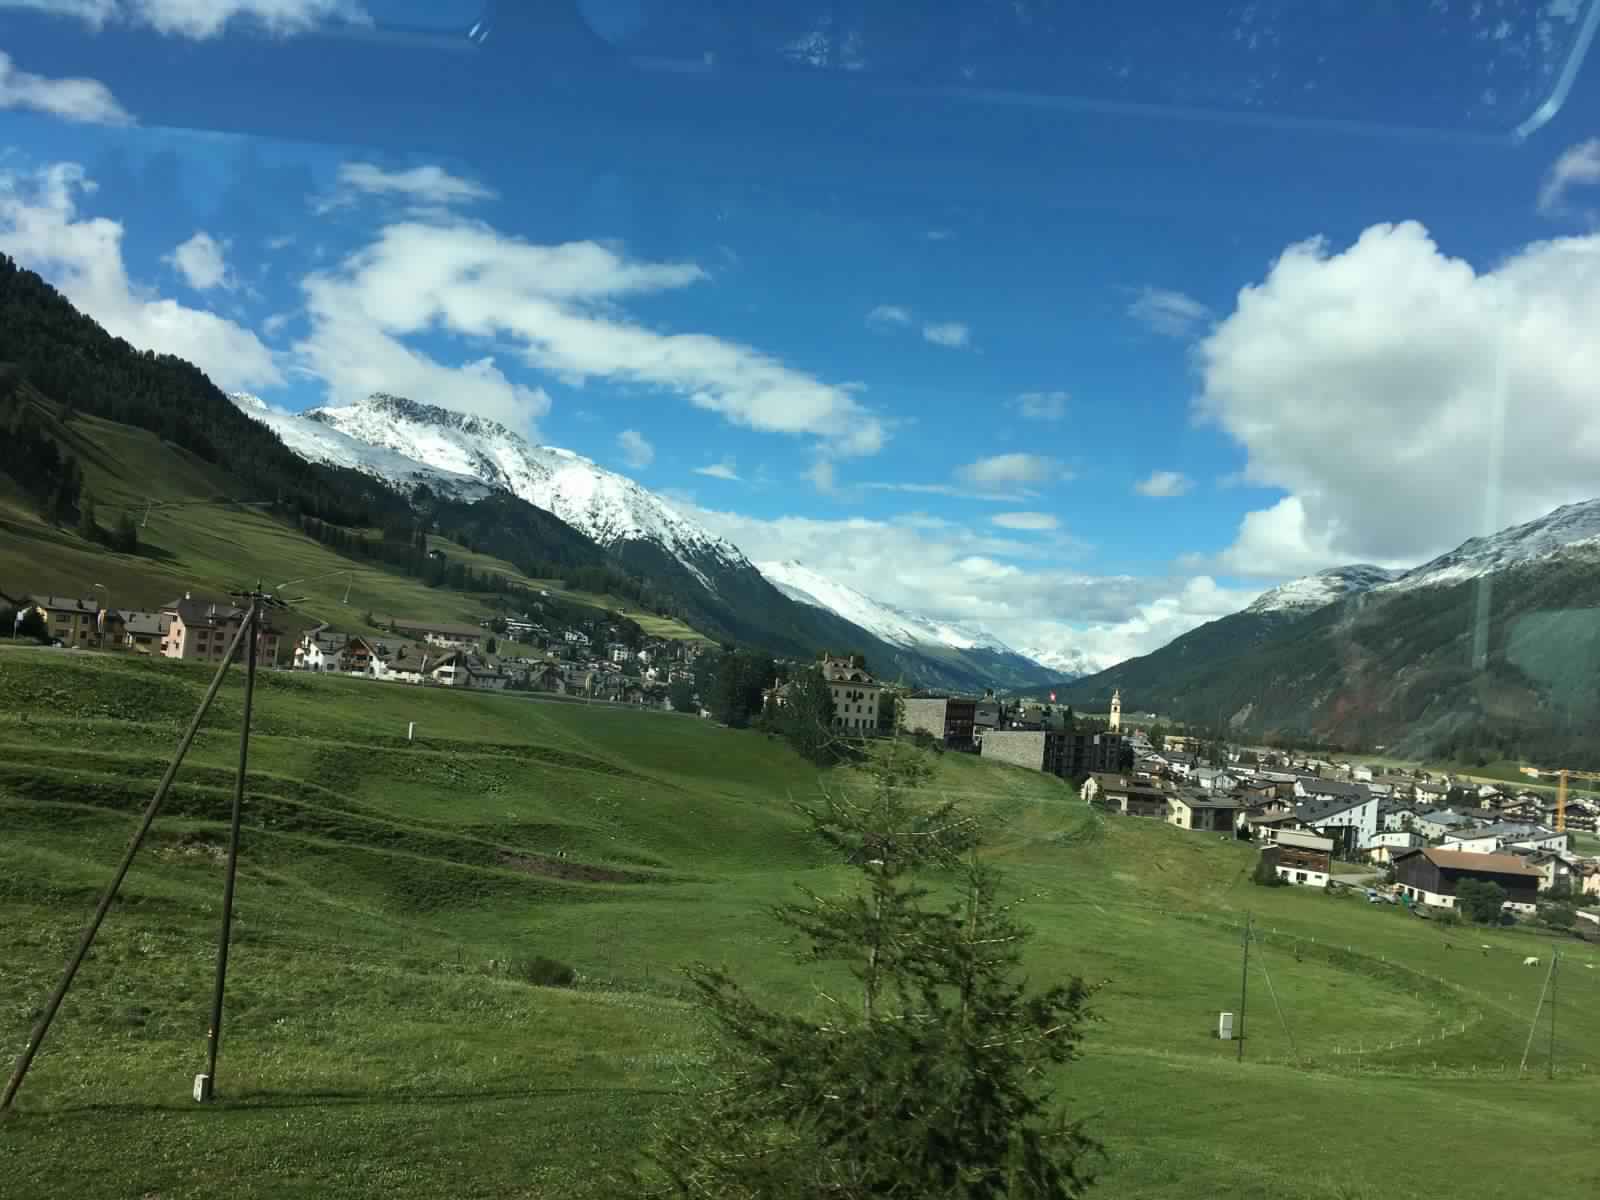 "بالصور" جولة مع قطار جلاسير إكسبريس عبر جبال اﻷلب السويسرية 12